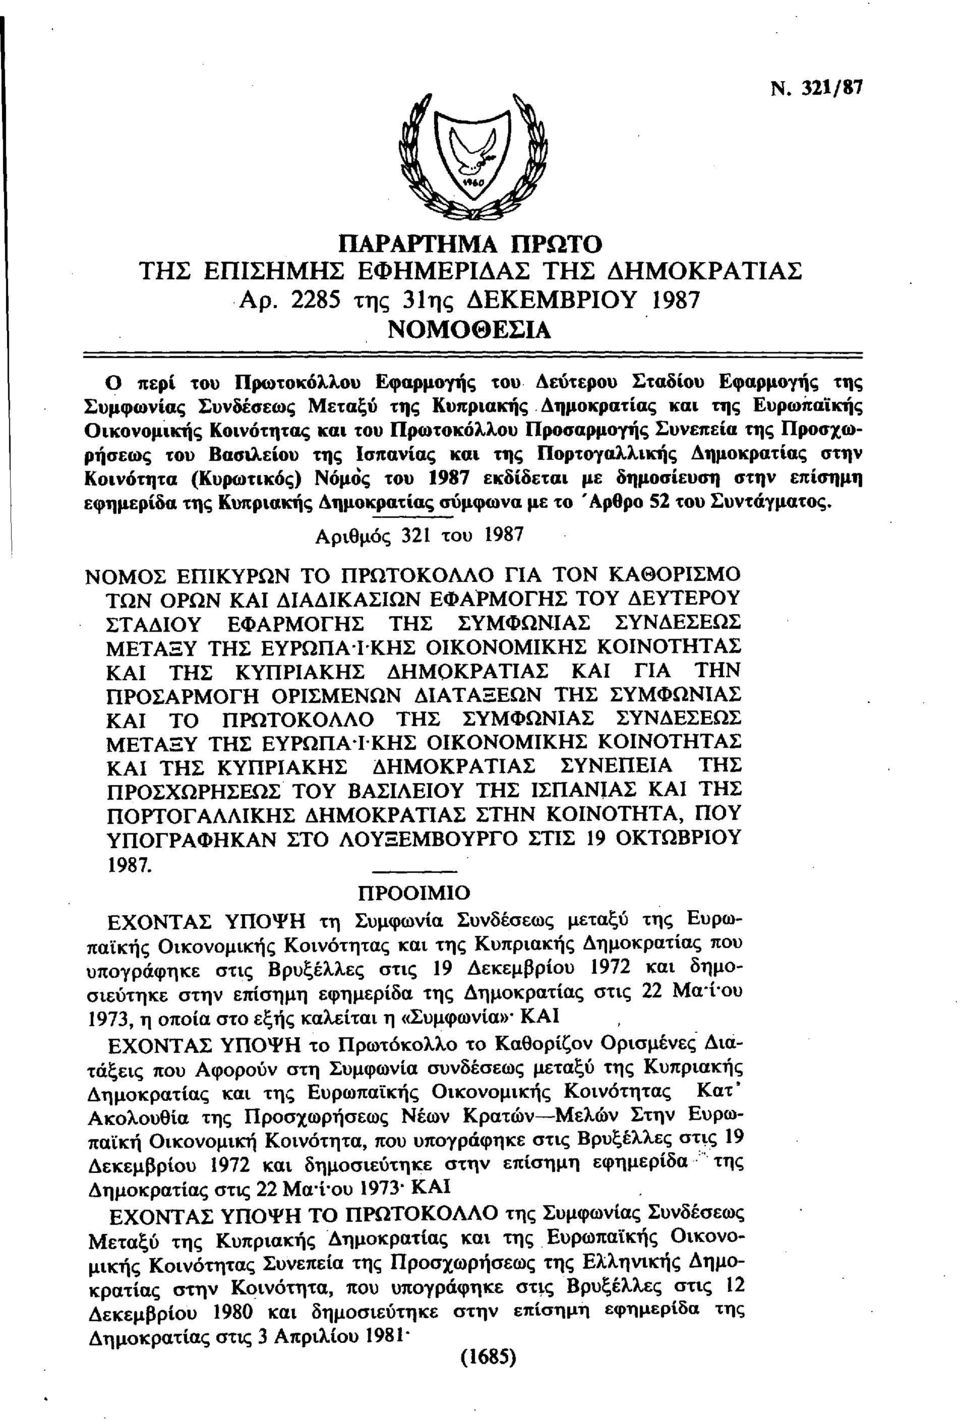 Κοινότητας και του Πρωτοκόλλου Προσαρμογής Συνεπεία της Προσχωρήσεως του Βασιλείου της σπανίας και της Πορτογαλλικής Δημοκρατίας στην Κοινότητα (Κυρωτικός) Νόμος του 1987 εκδίδεται με δημοσίευση στην